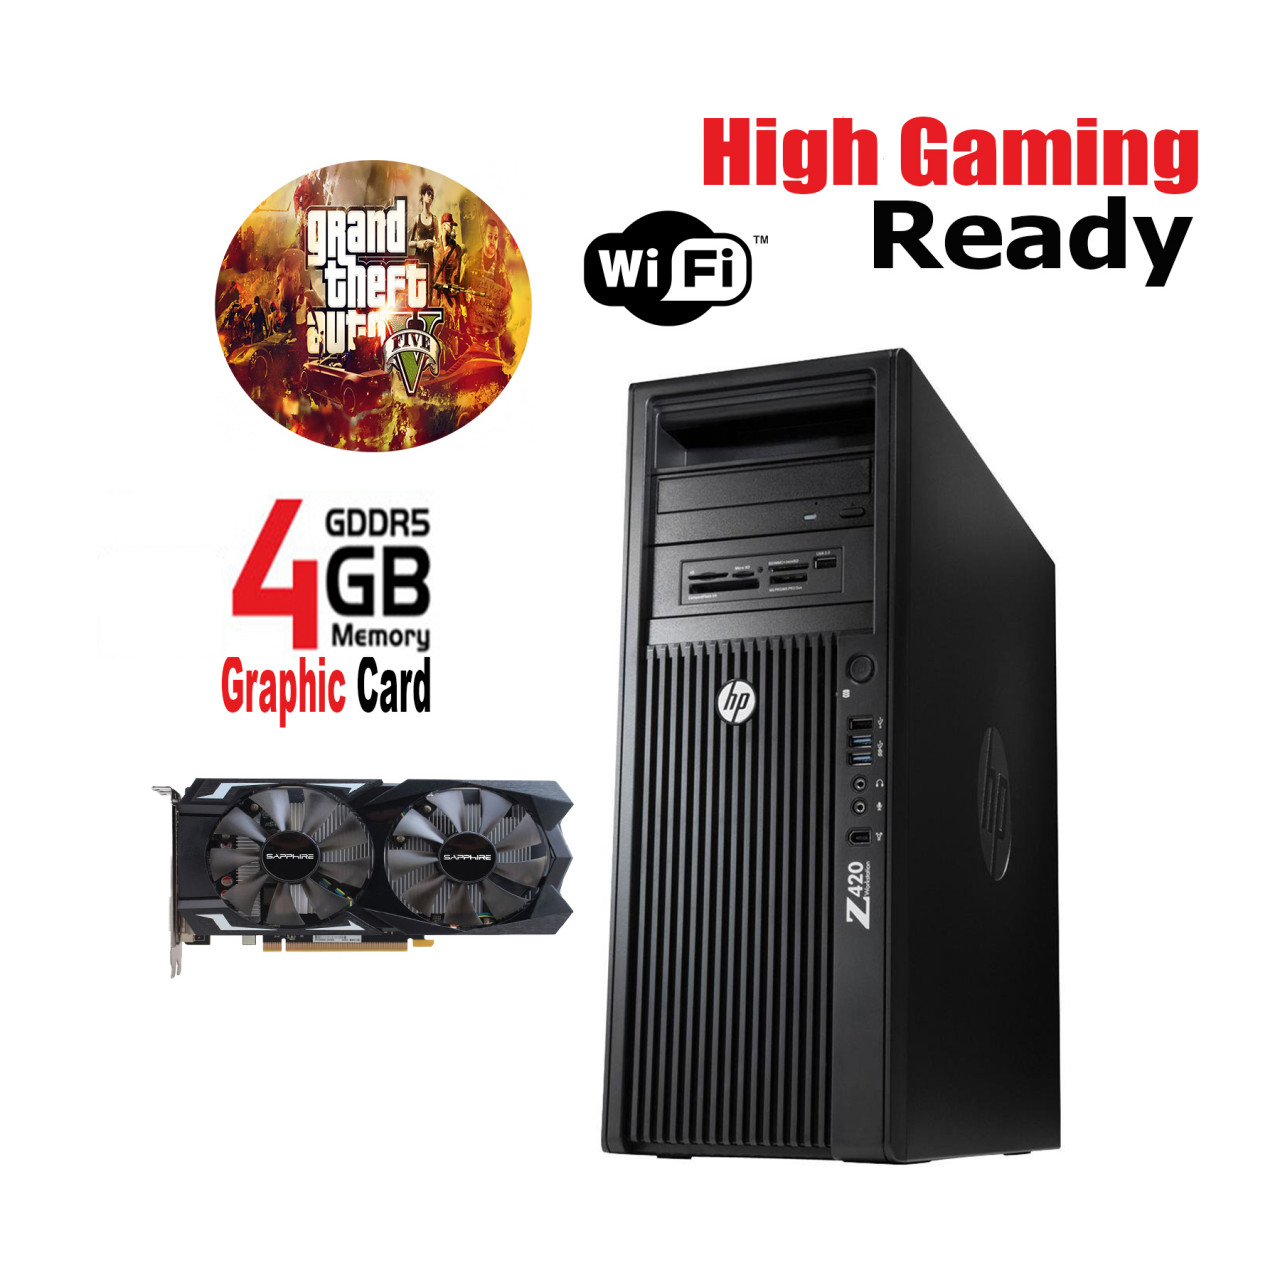 starudija Brisanje navigacija  HP Z420 Gaming PC 8 Core E5-1650 8GB RAM 1TB Hard Drive Price in